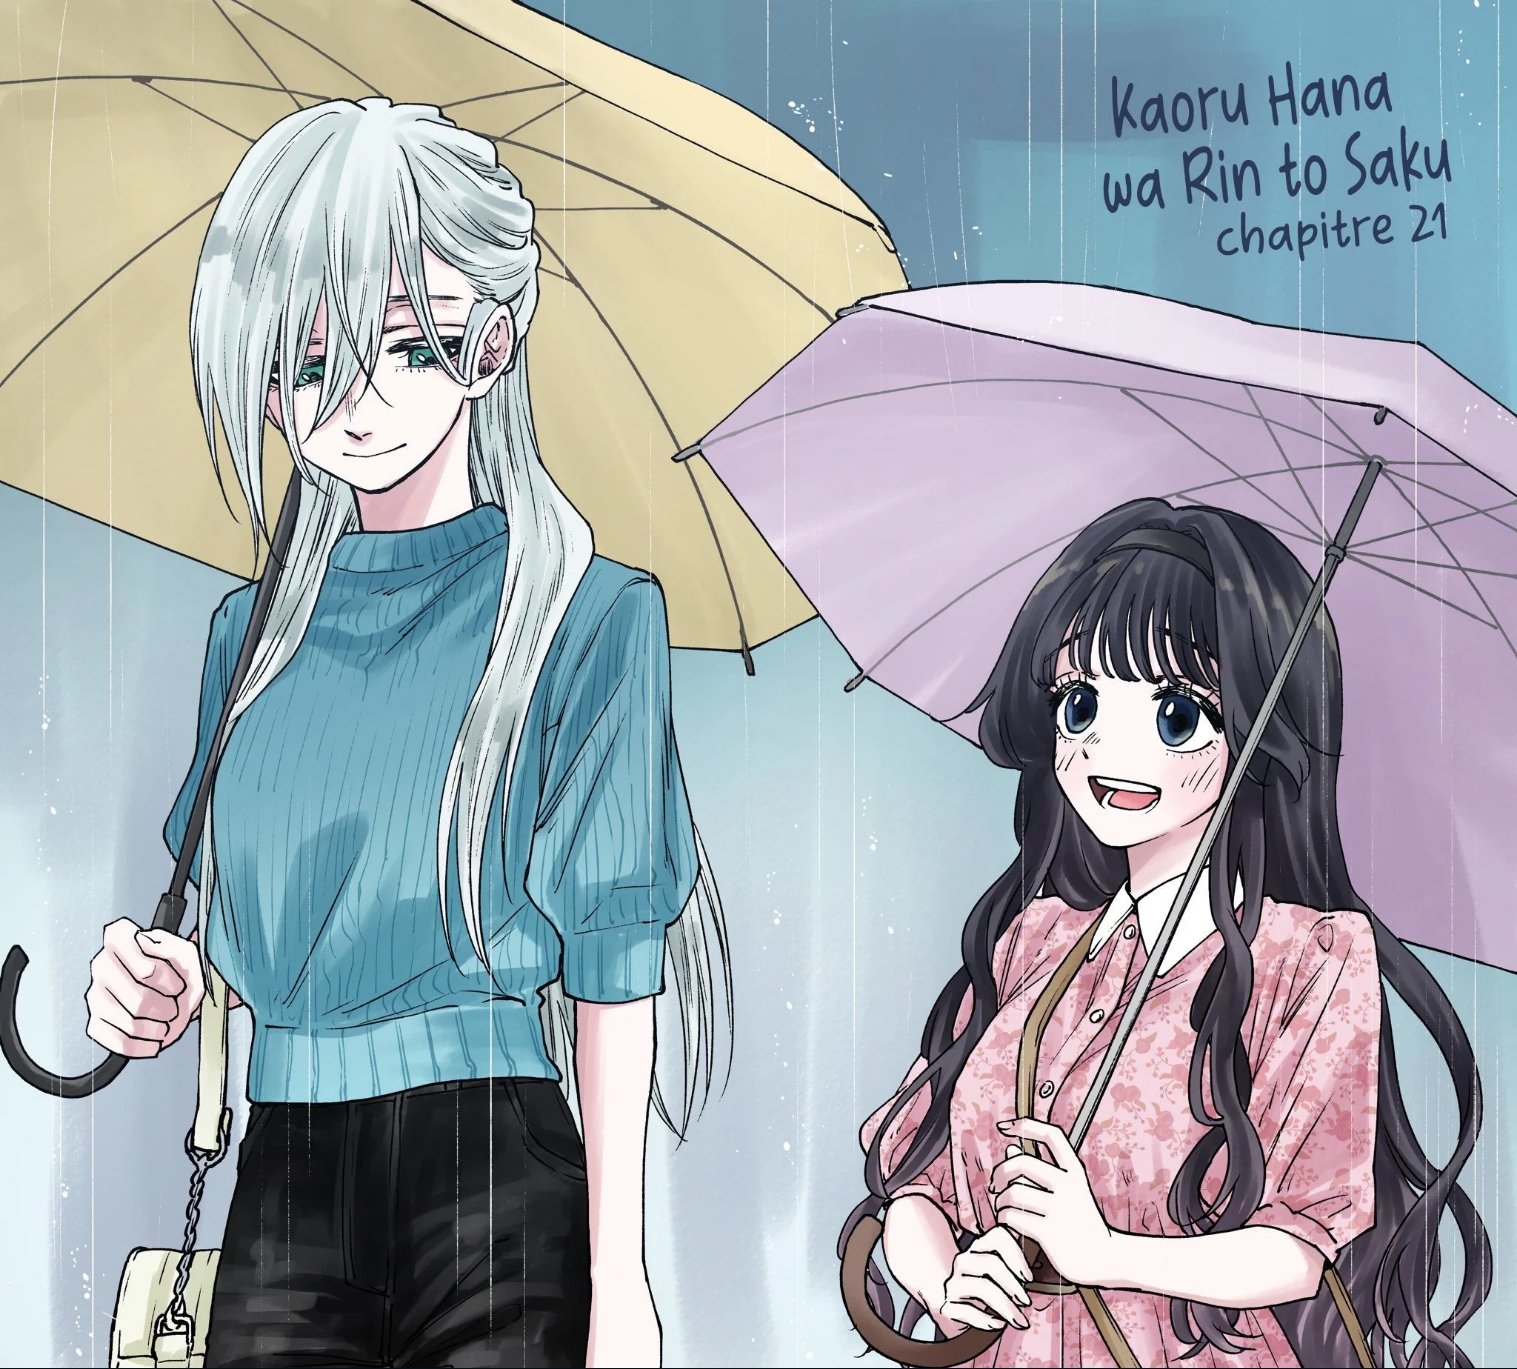 Kaoru Hana Wa Rin To Saku: Chapter 21 - Page 1